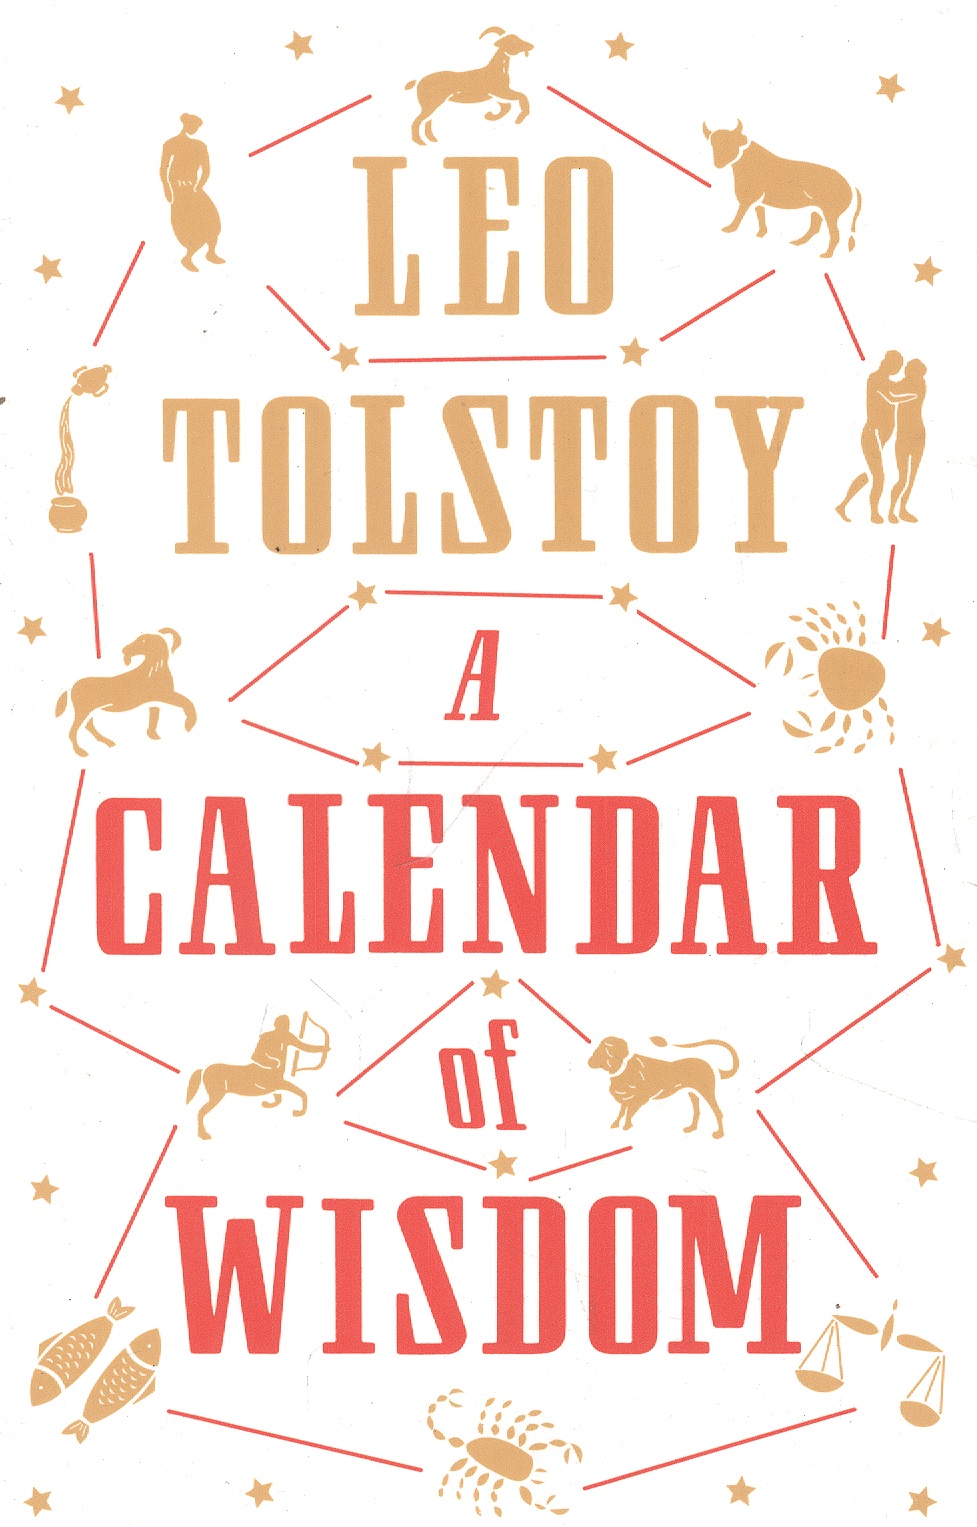 tolstoy leo a calendar of wisdom A Calendar of Wisdom